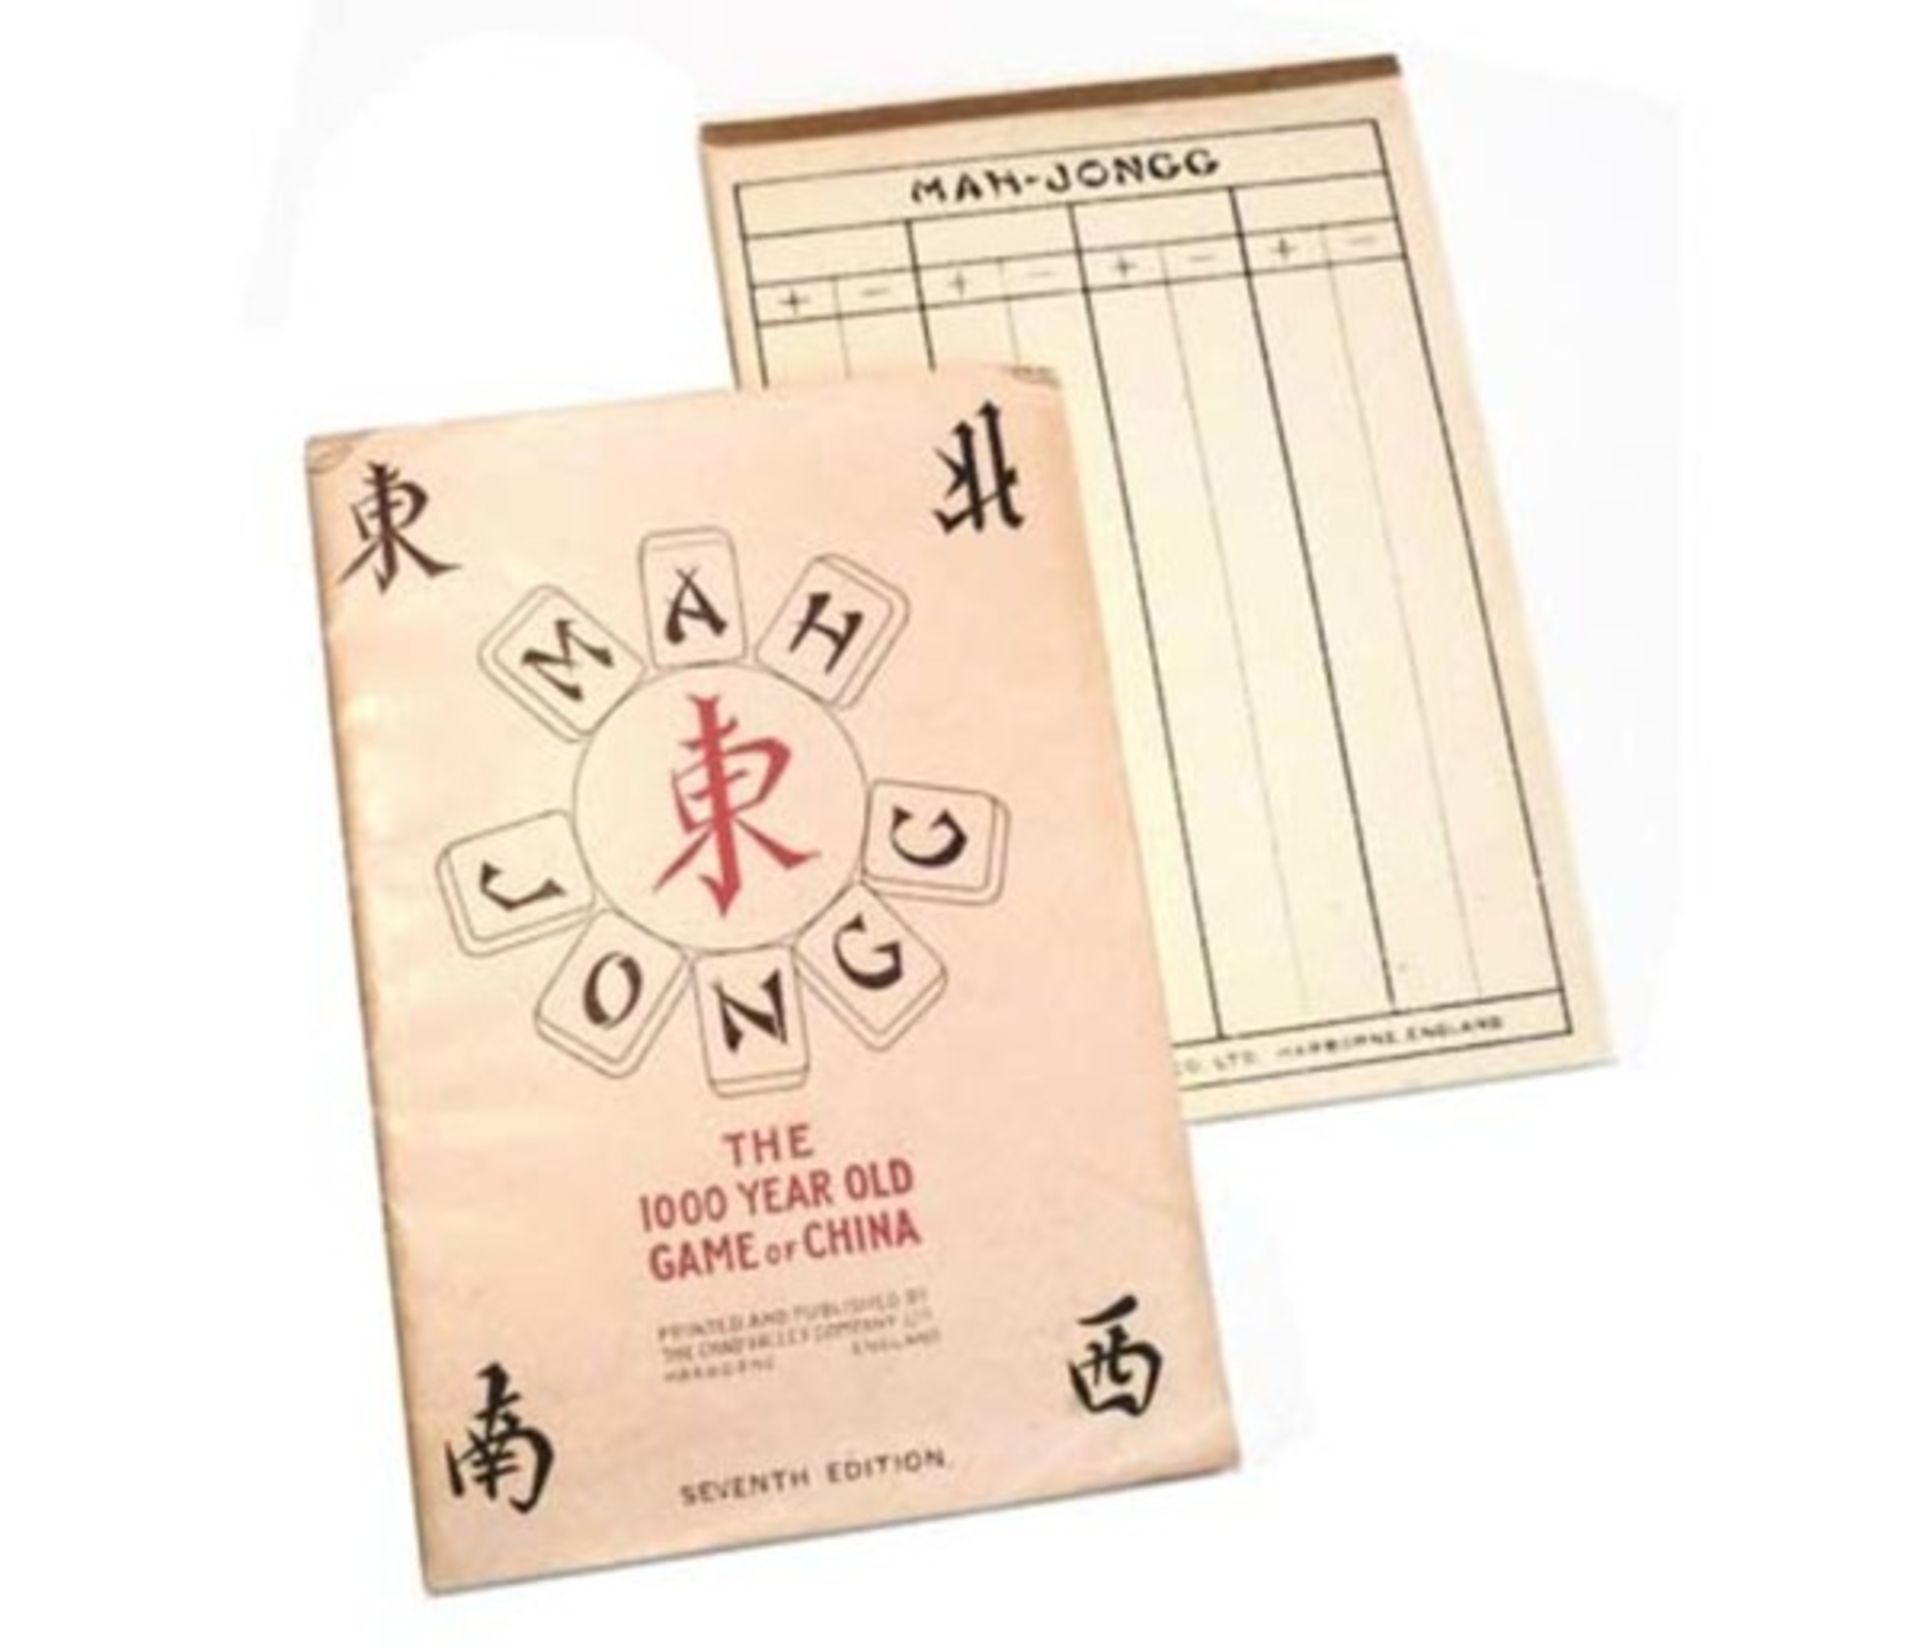 (Mahjong) Mahjong Chad Valley, schuifdoos voor speelkaarten, ca. 1924 - Bild 8 aus 10